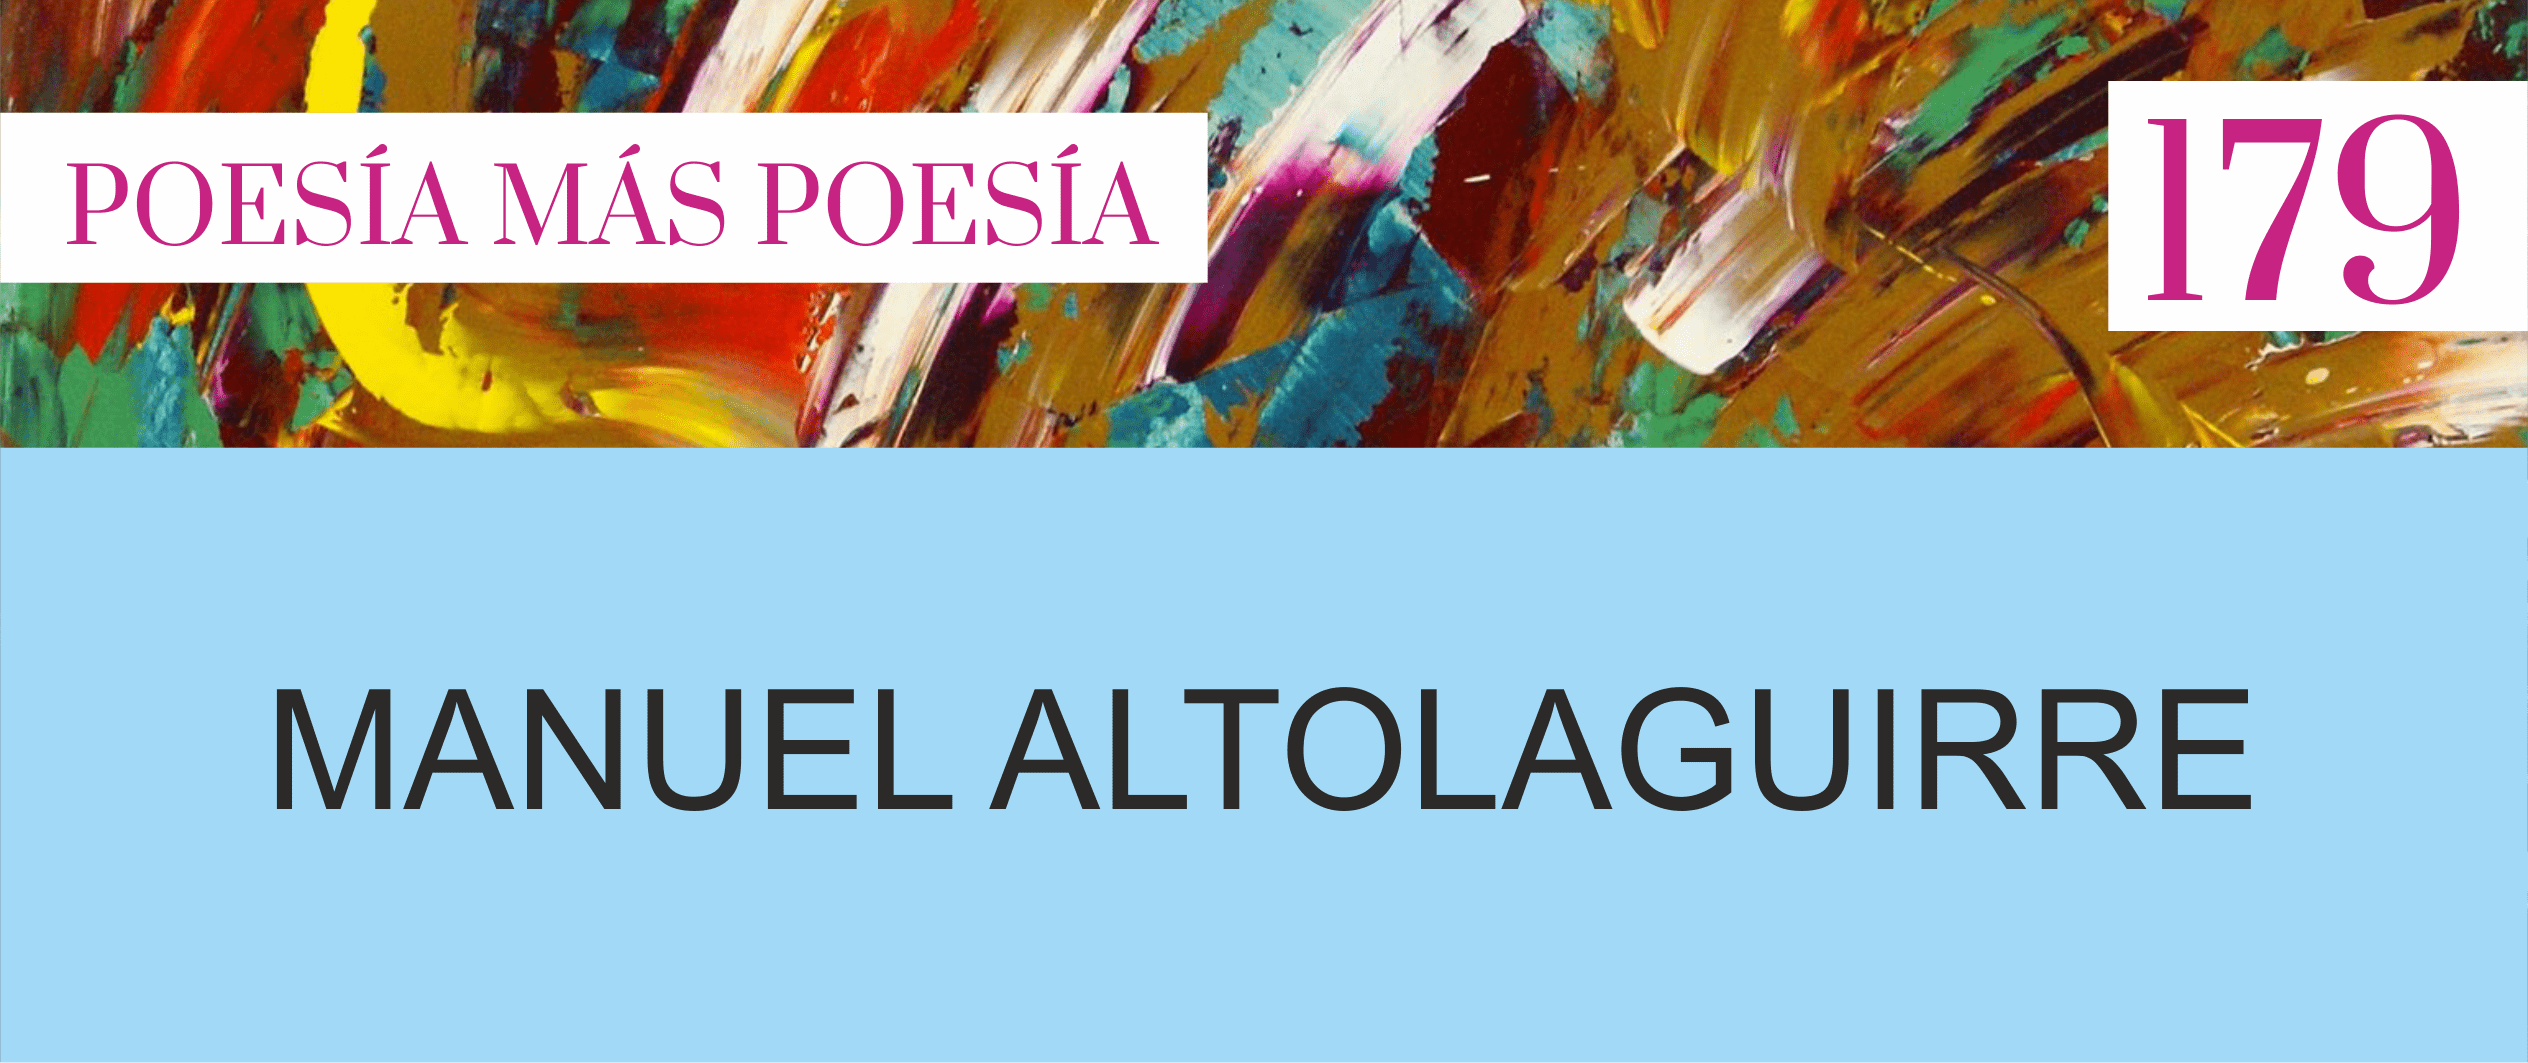 179. Poesía más Poesía: Manuel Altolaguirre